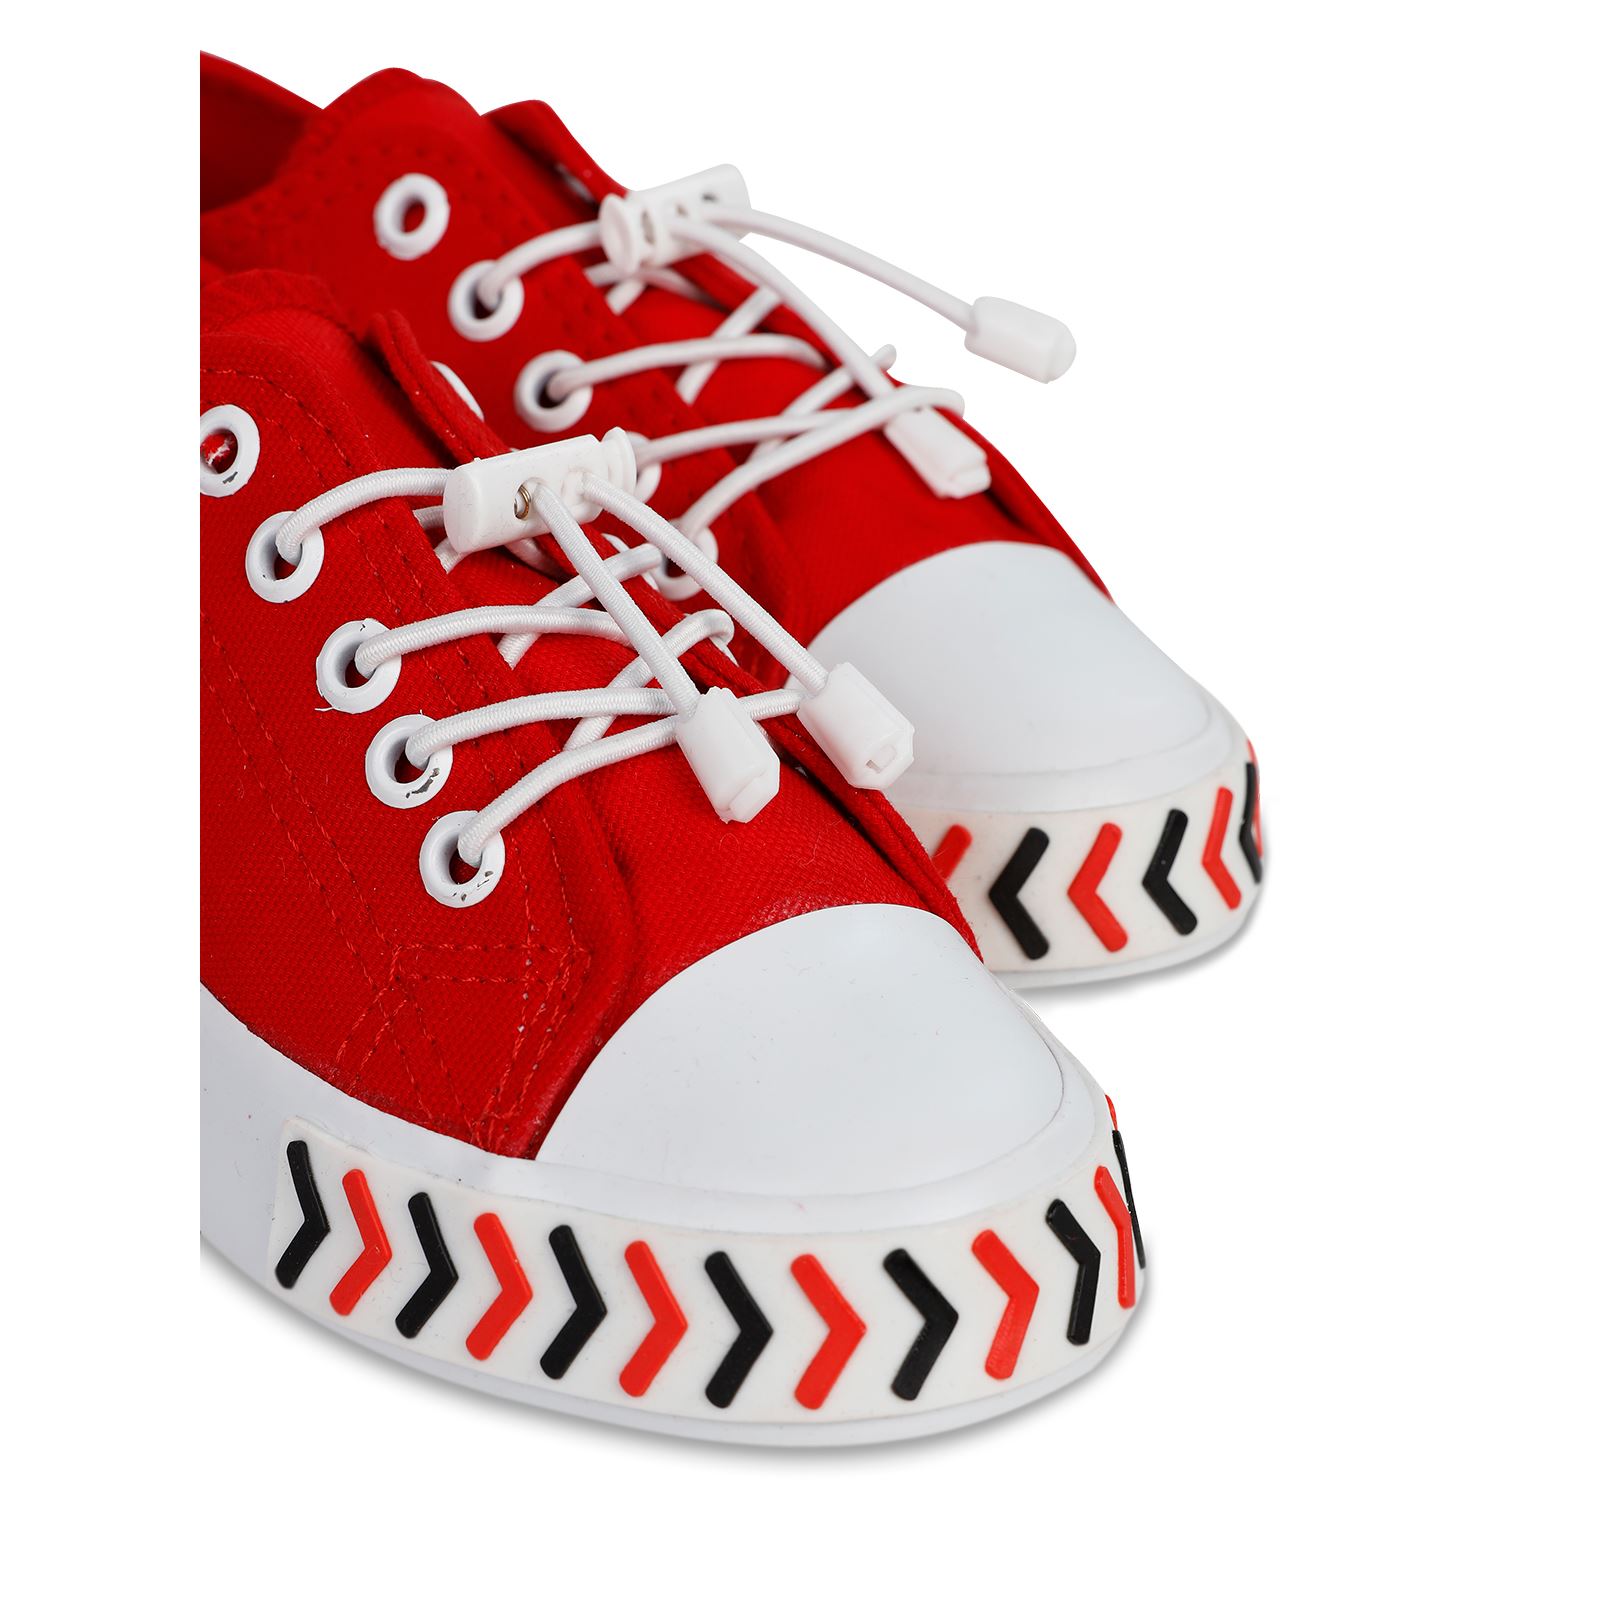 Civil Boys Erkek Çocuk Spor Ayakkabı 31-35 Numara Kırmızı